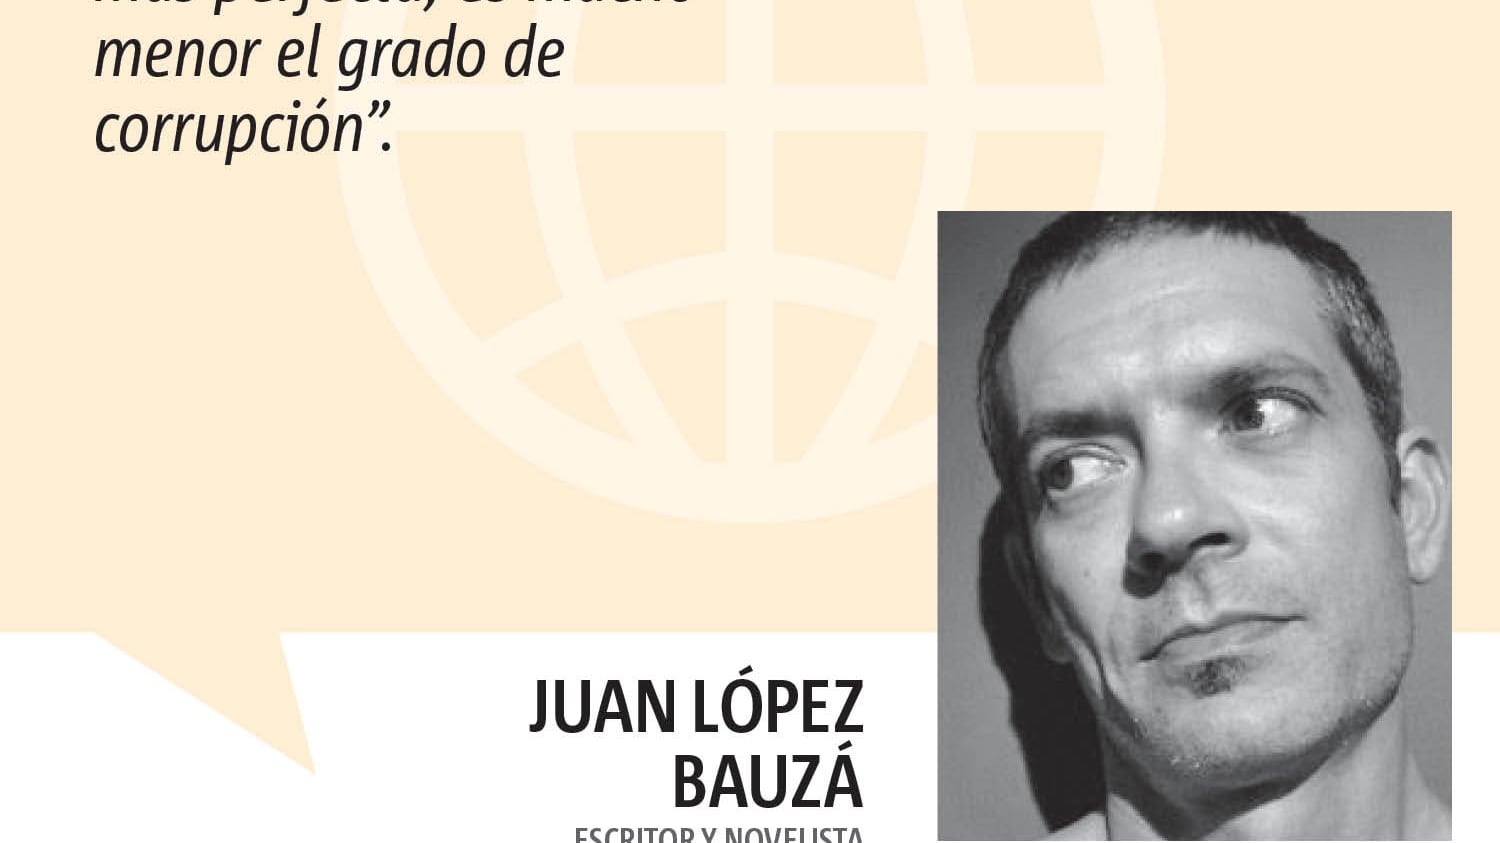 Juan López Bauzá